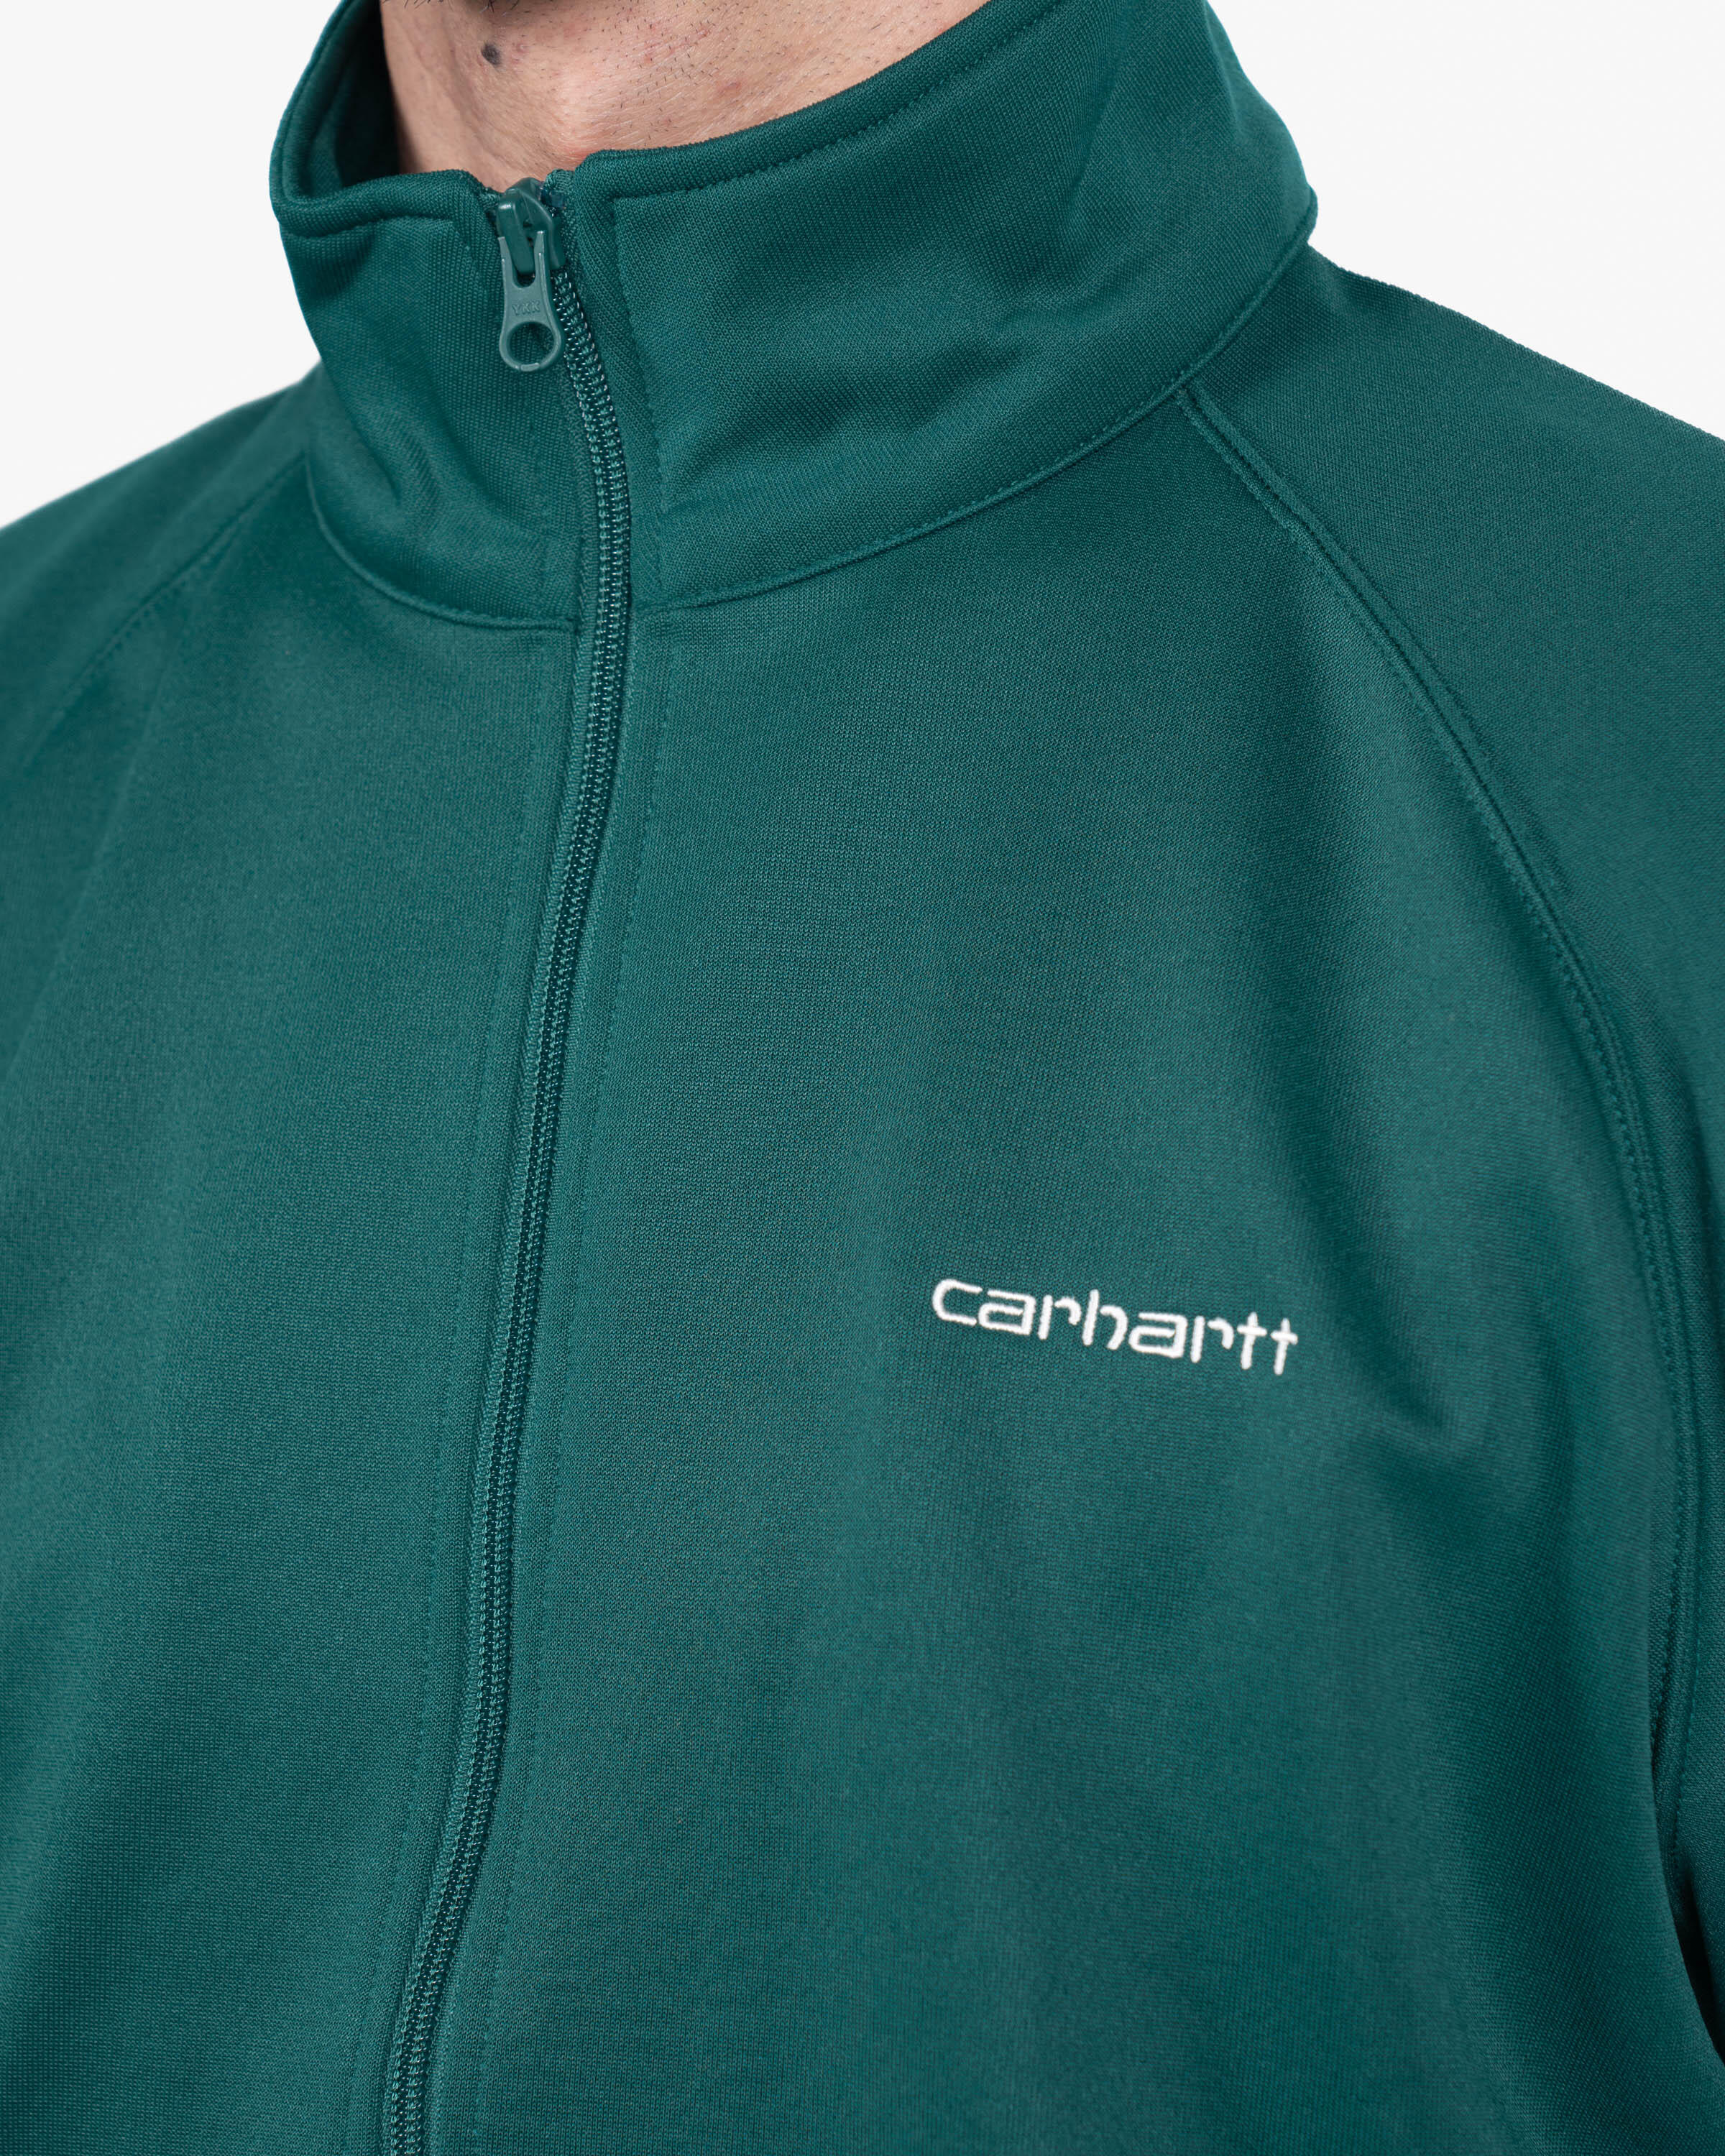 Carhartt WIP Benchill Jacket